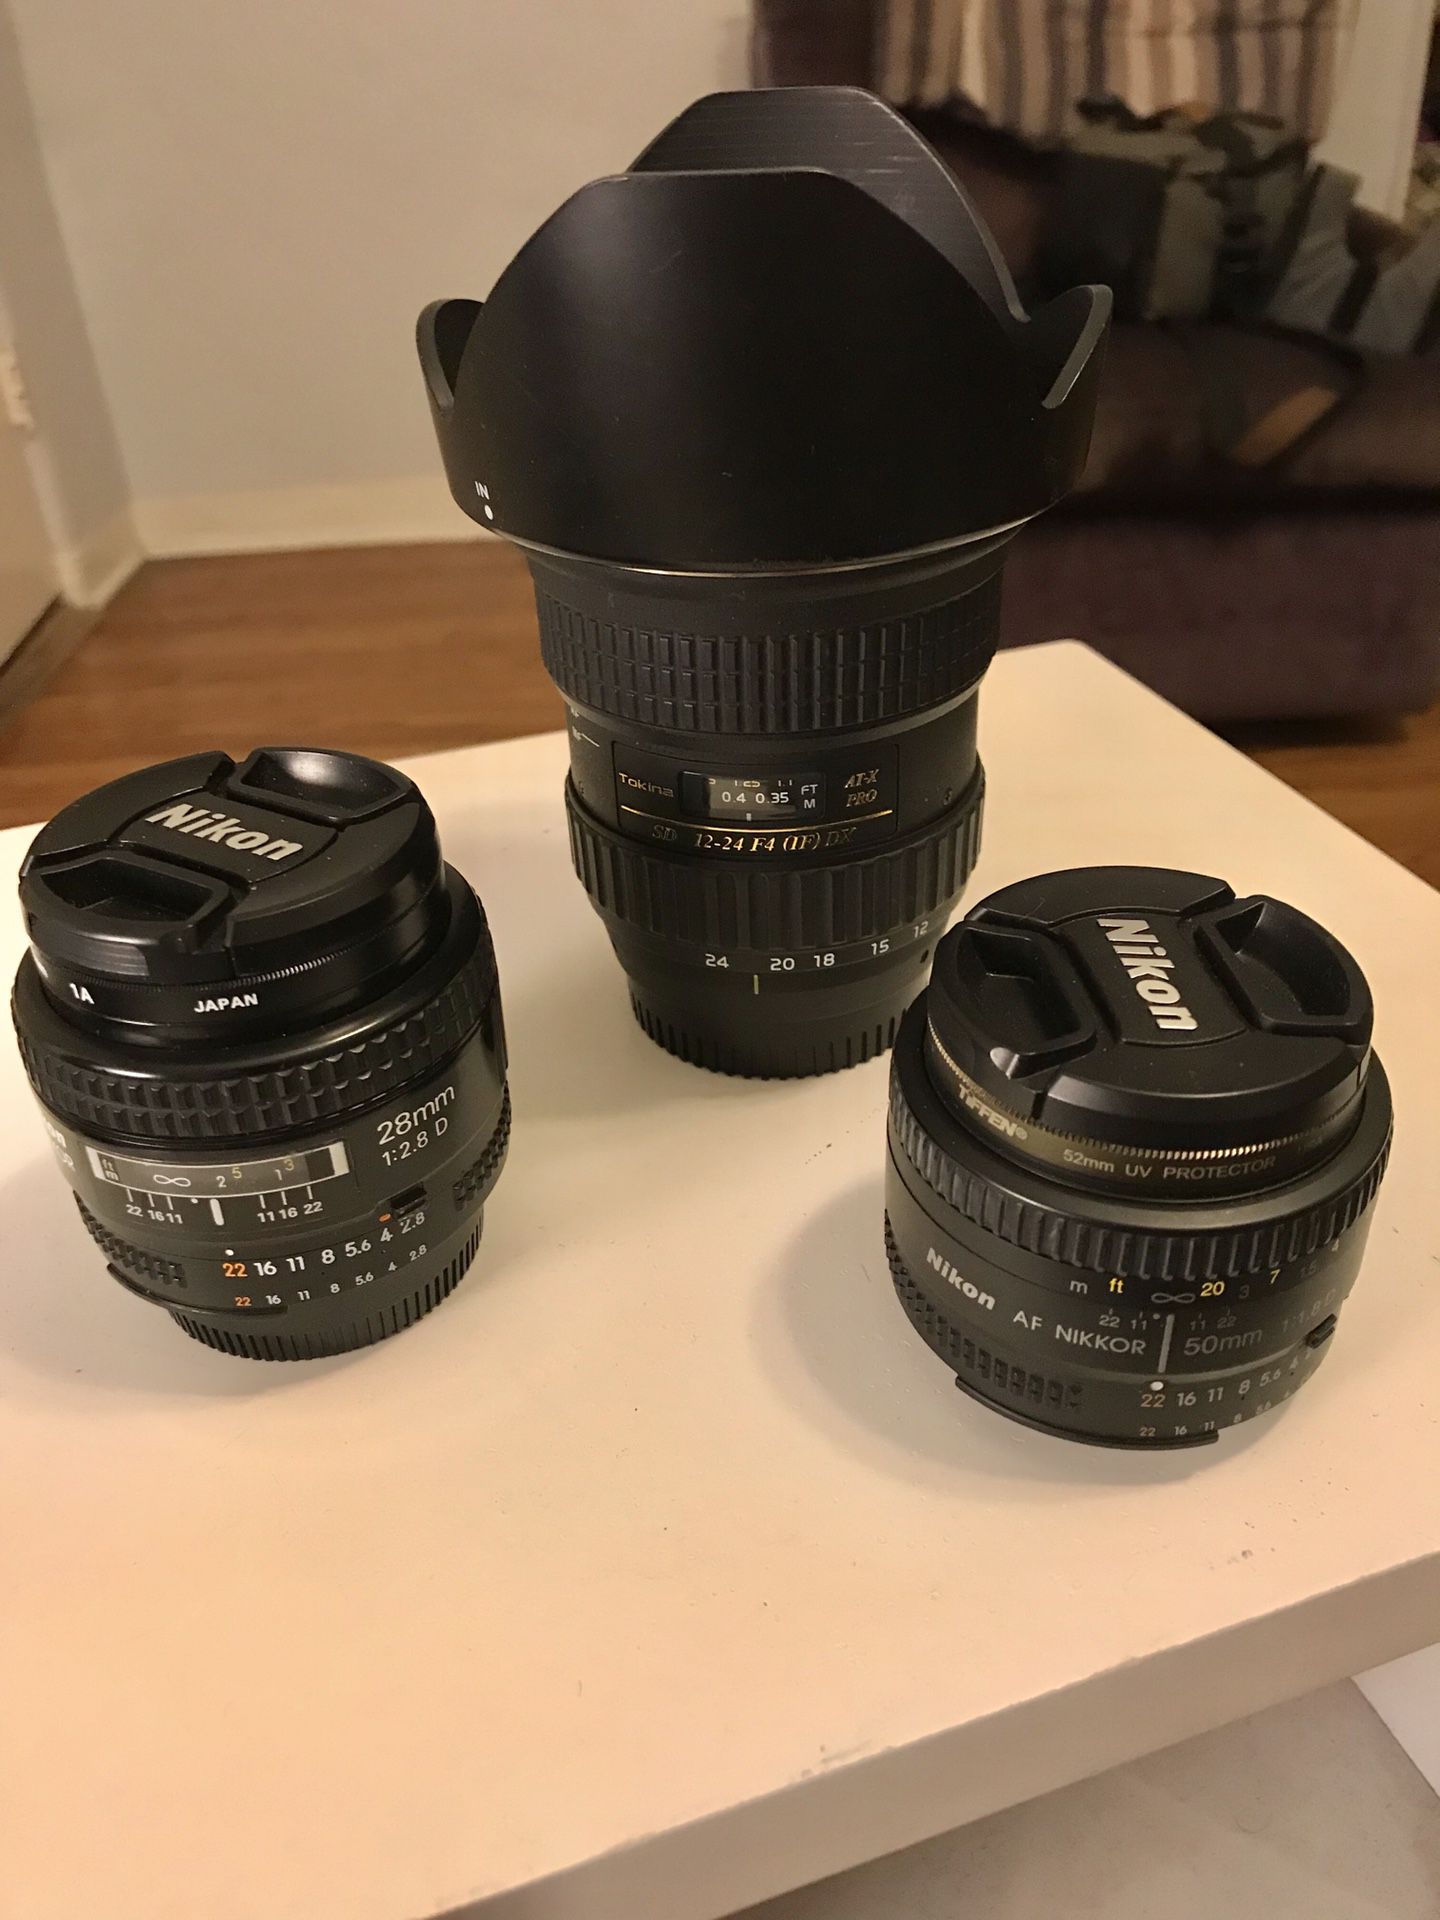 Nikon Lenses (28mm f2.8, 50mm F1.8, 12-24mm f4)